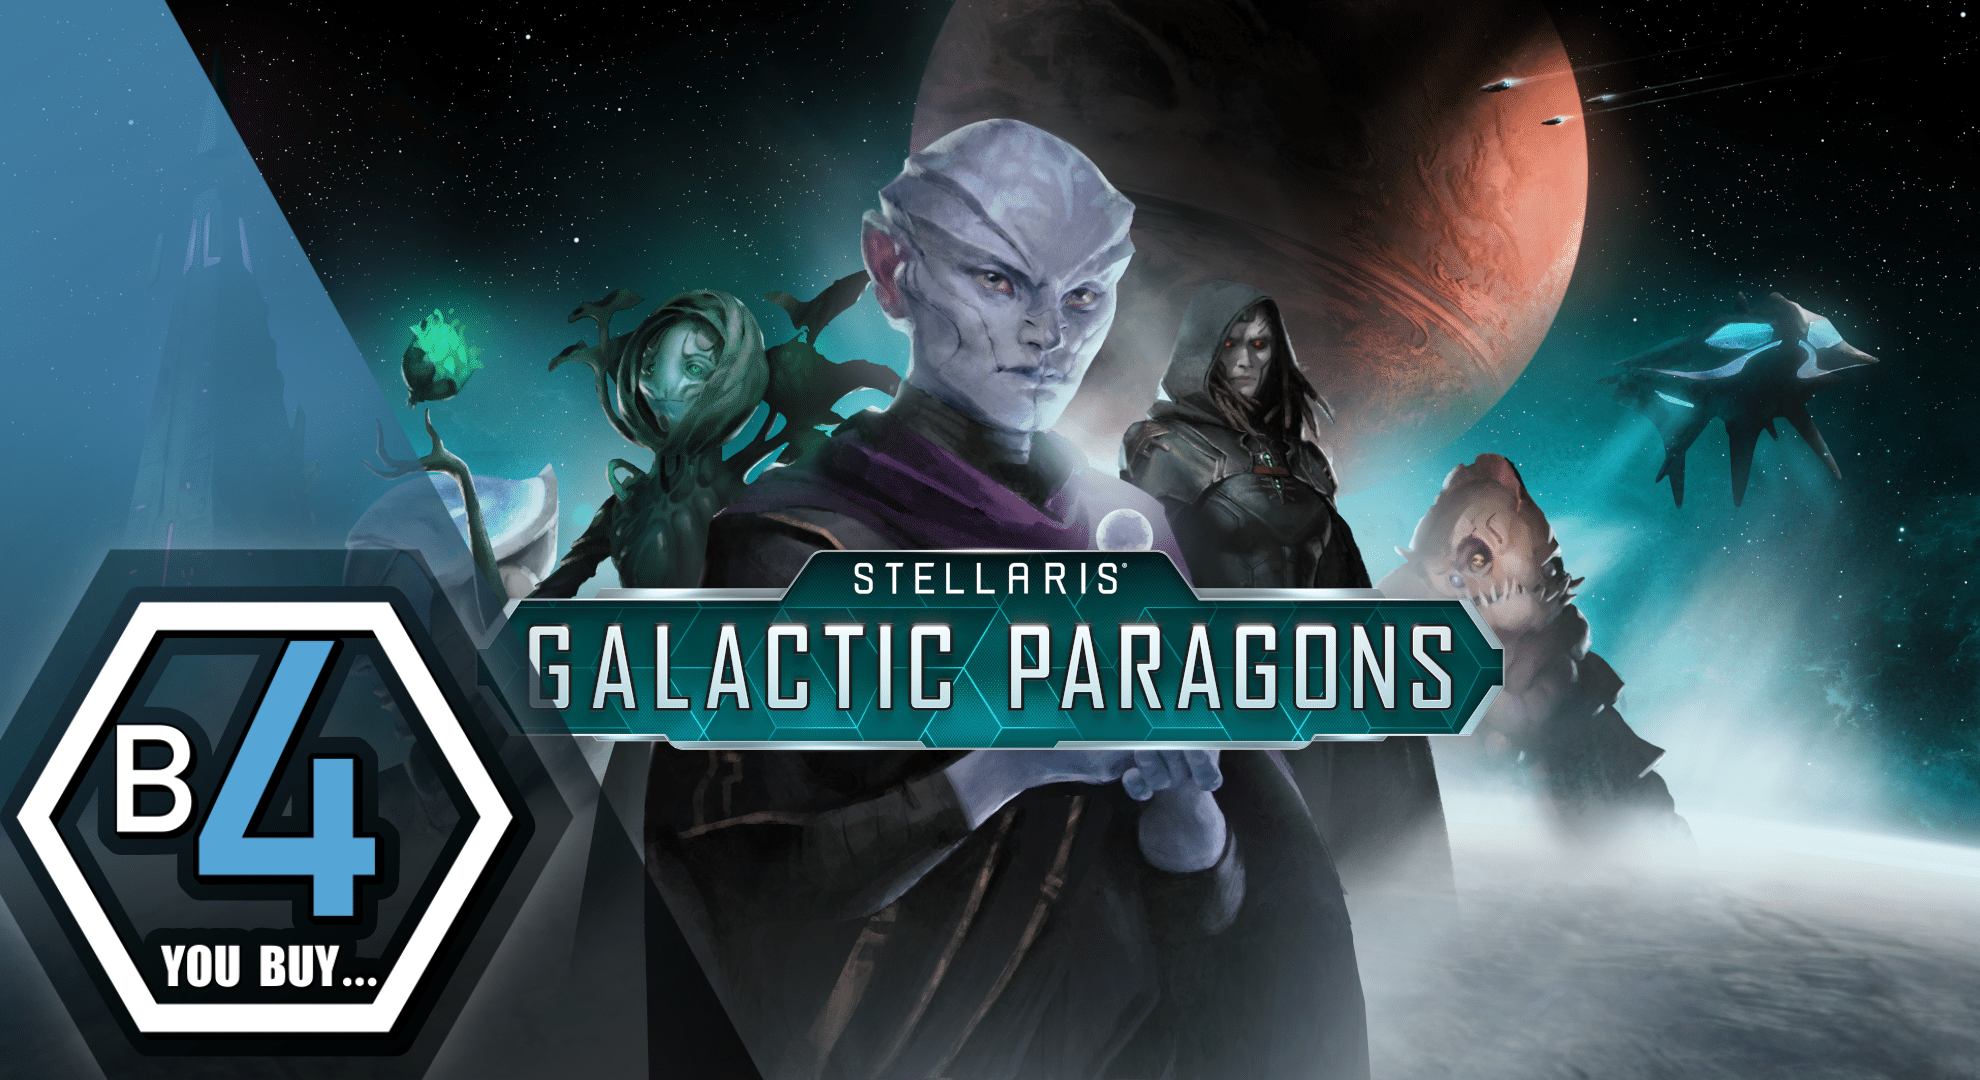 B4 You Buy Stellaris: Galactic Paragons